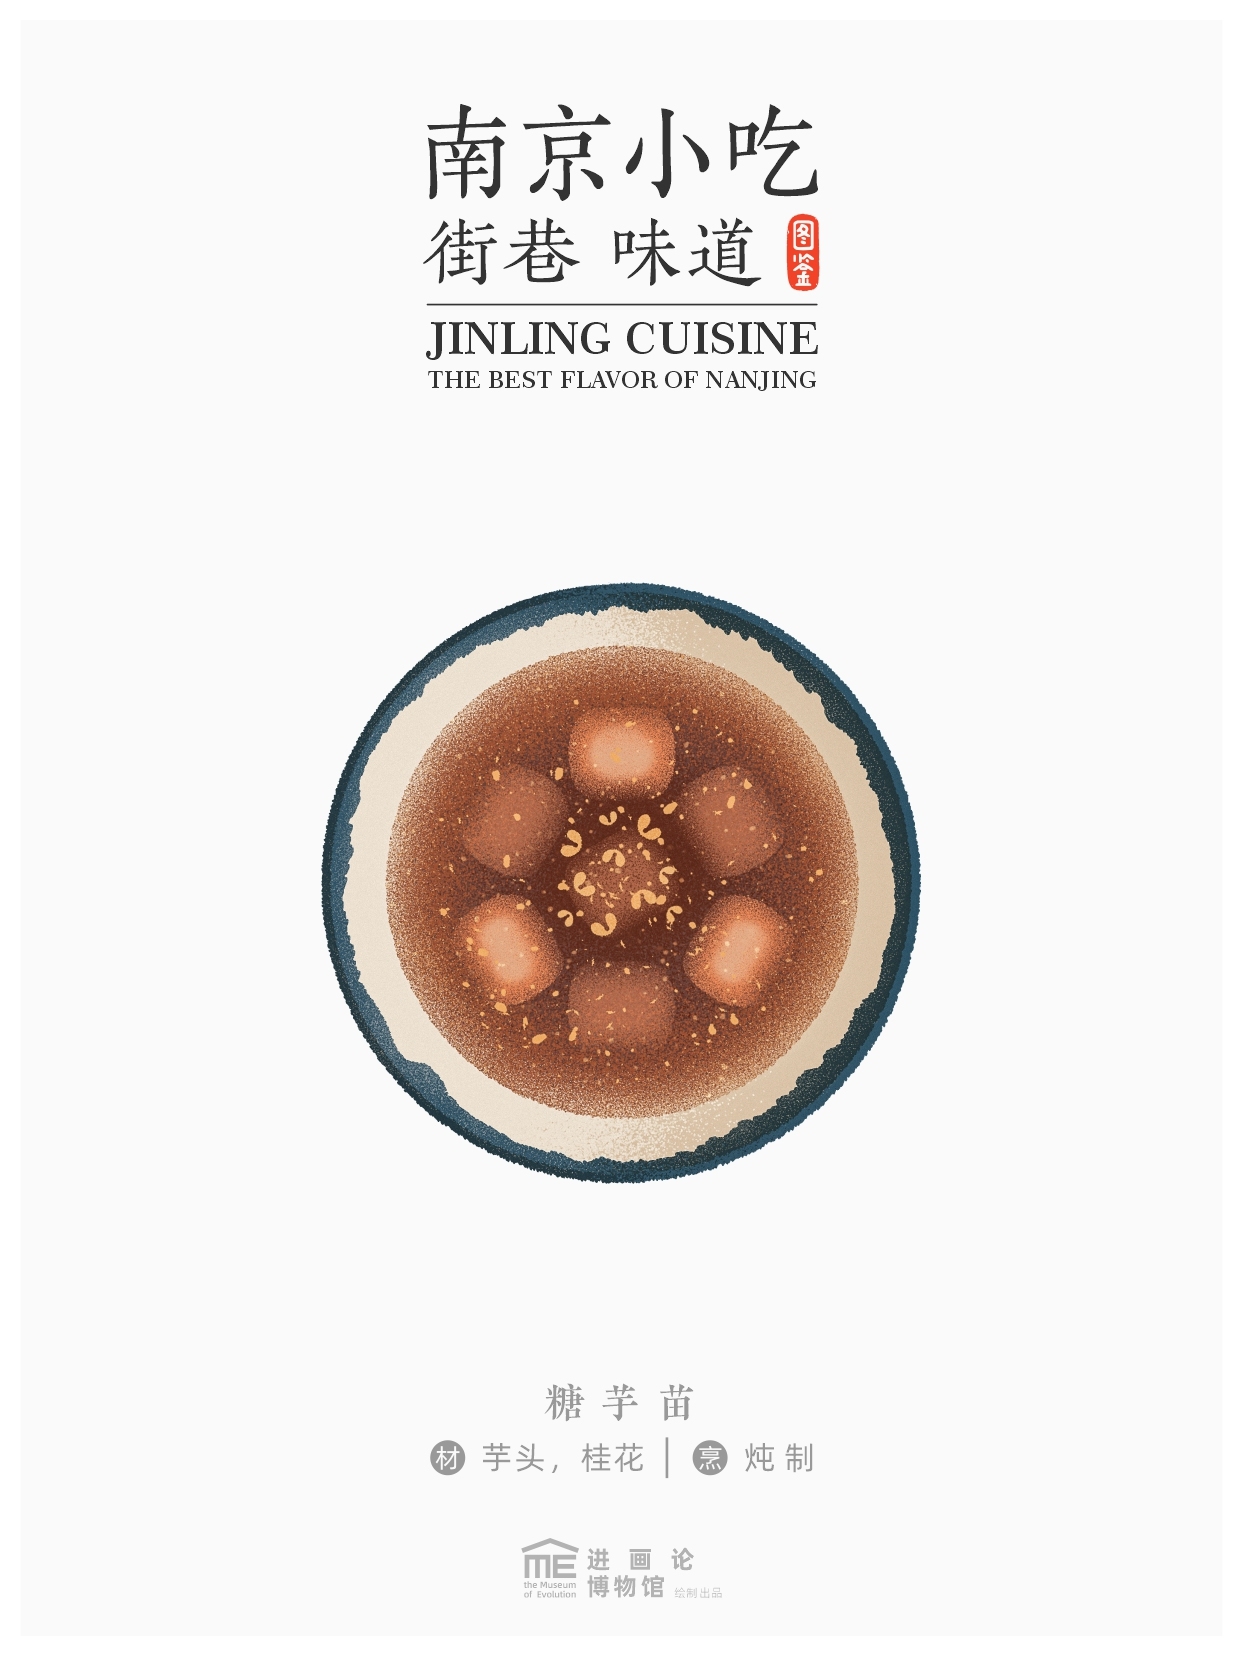 南京小吃图鉴商业插画海报设计-09.jpg